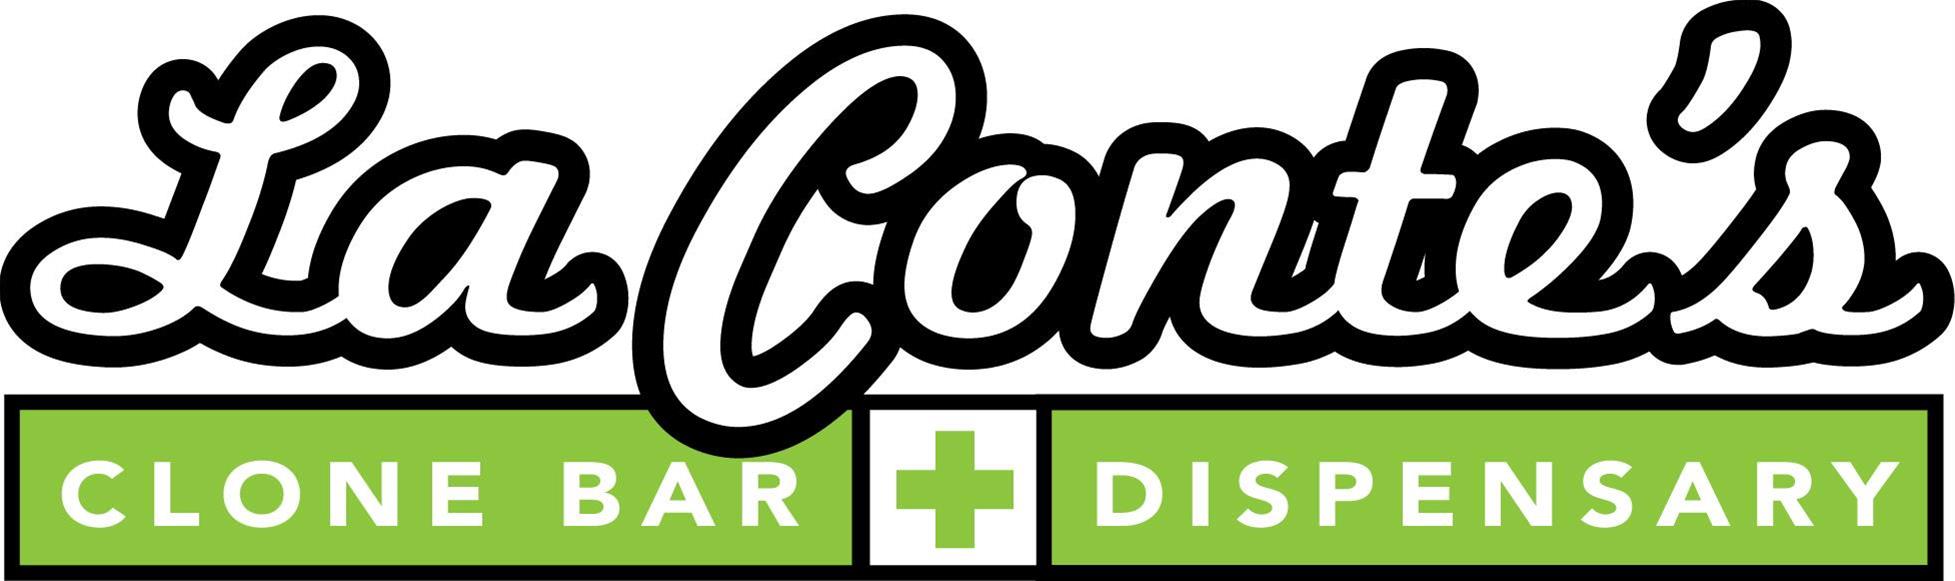 LaContes Clone Bar - North | Marijuana Dispensary in Denver | PotGuide.com